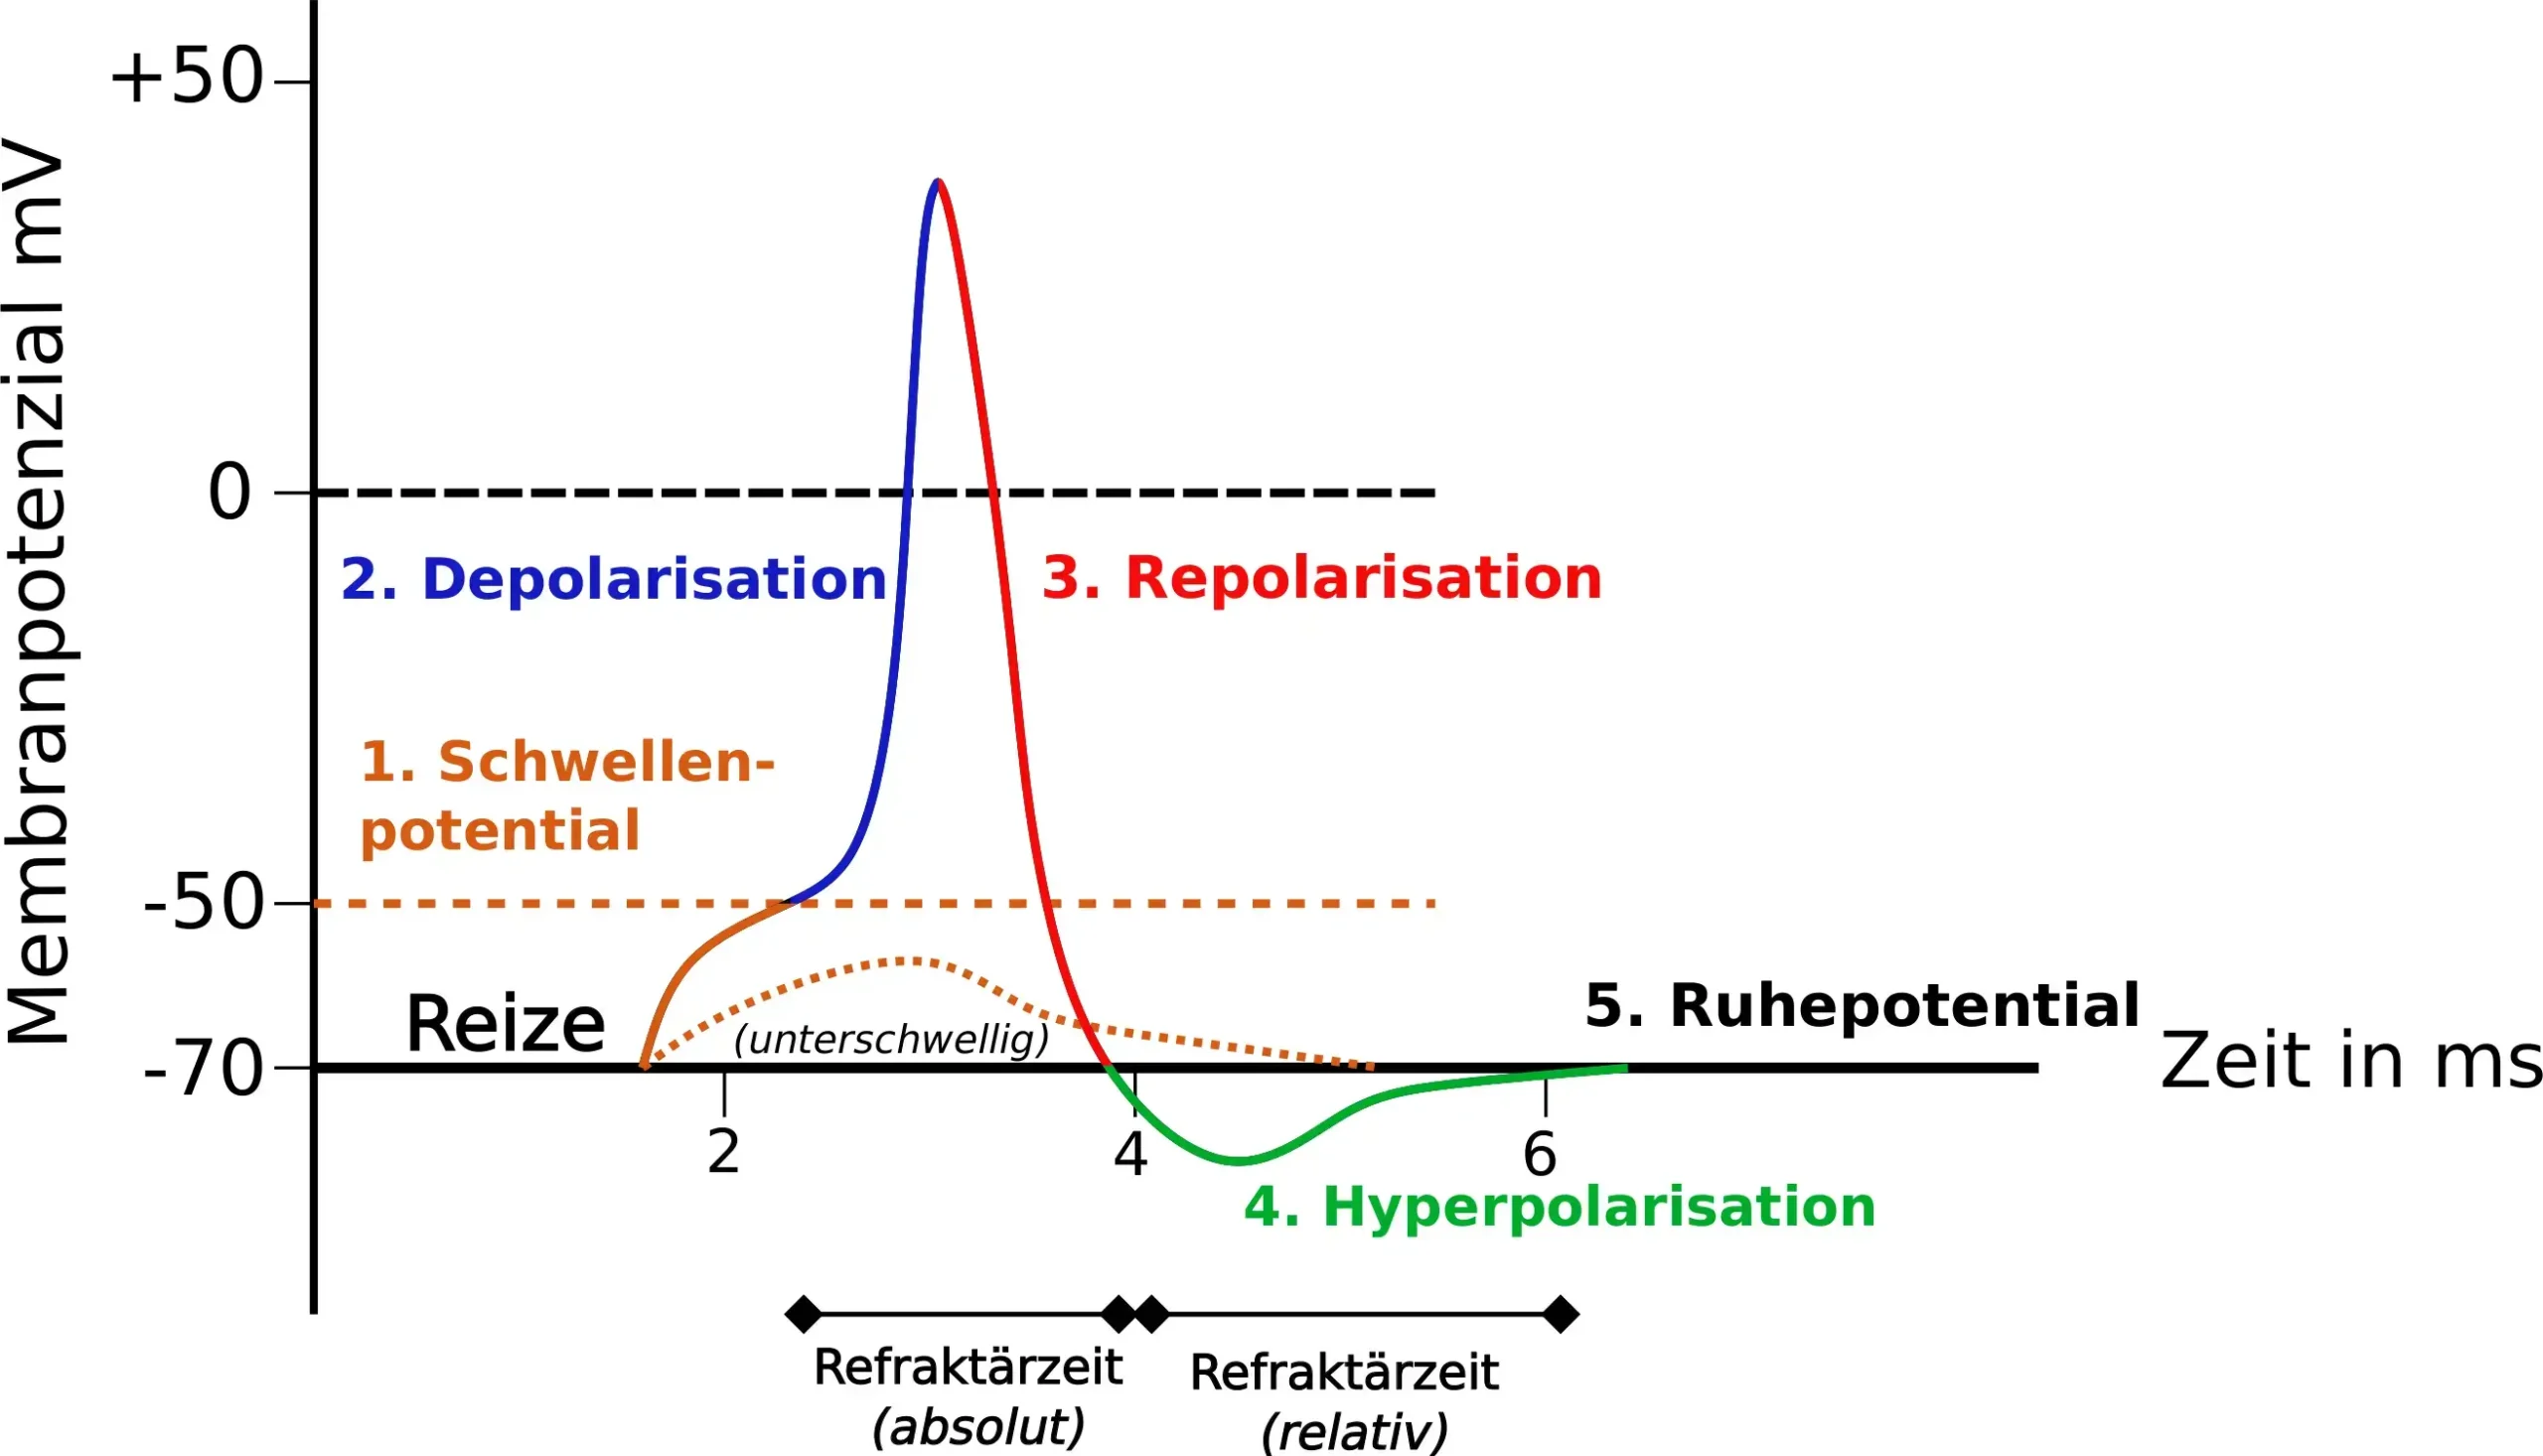 Schwellenpotential, Depolarisation, Repolarisation, Hyperpolarisation und Ruhepotential in einer Übersicht.